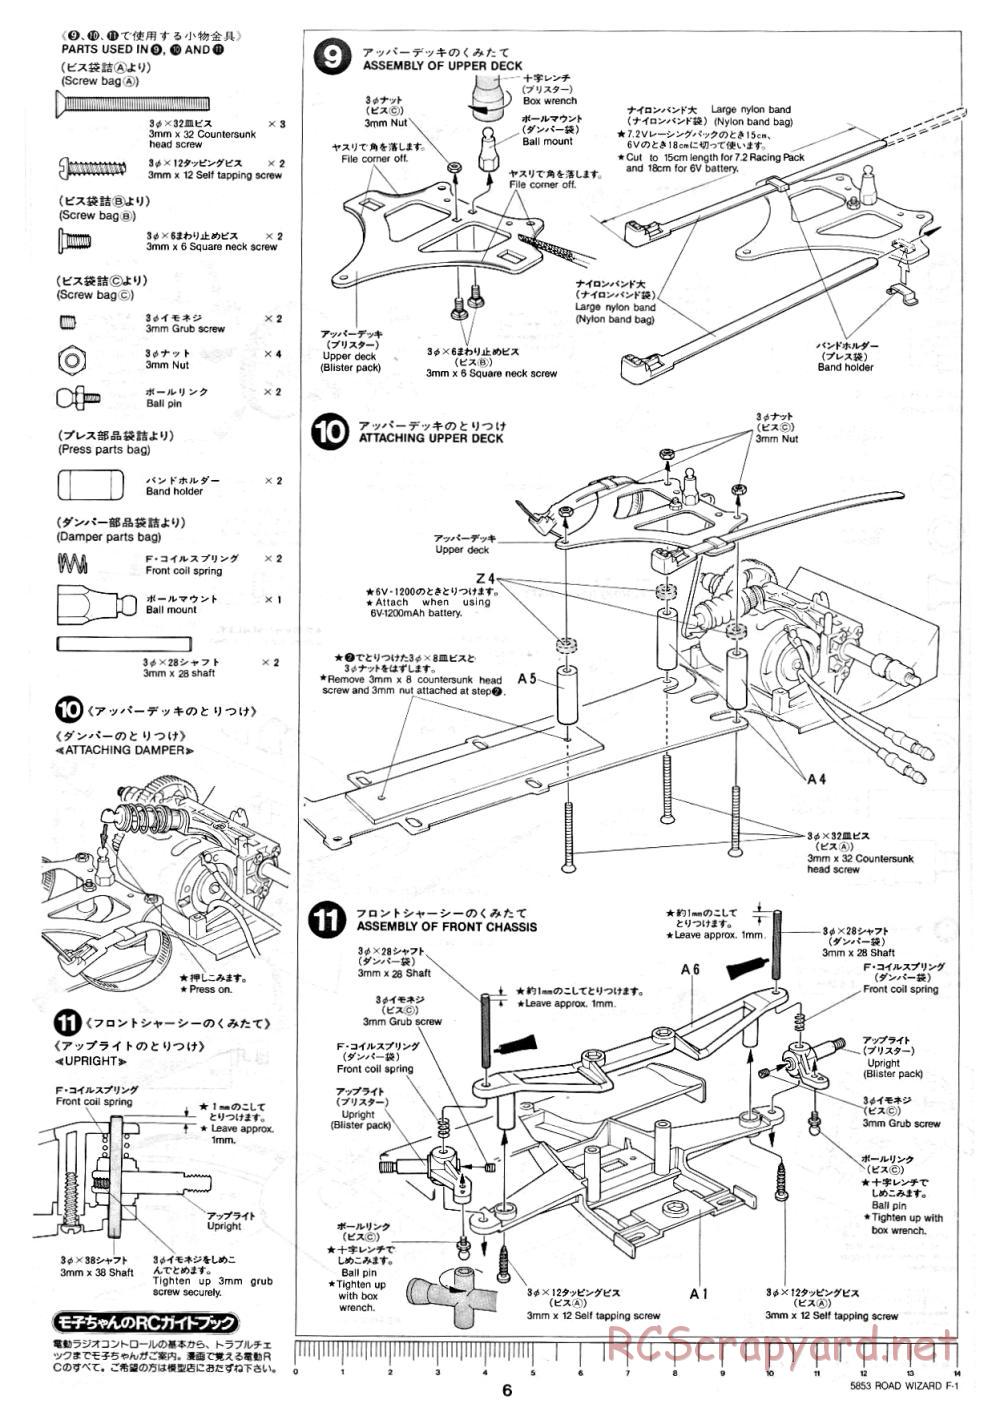 Tamiya - Road Wizard F-1 - 58053 - Manual - Page 6